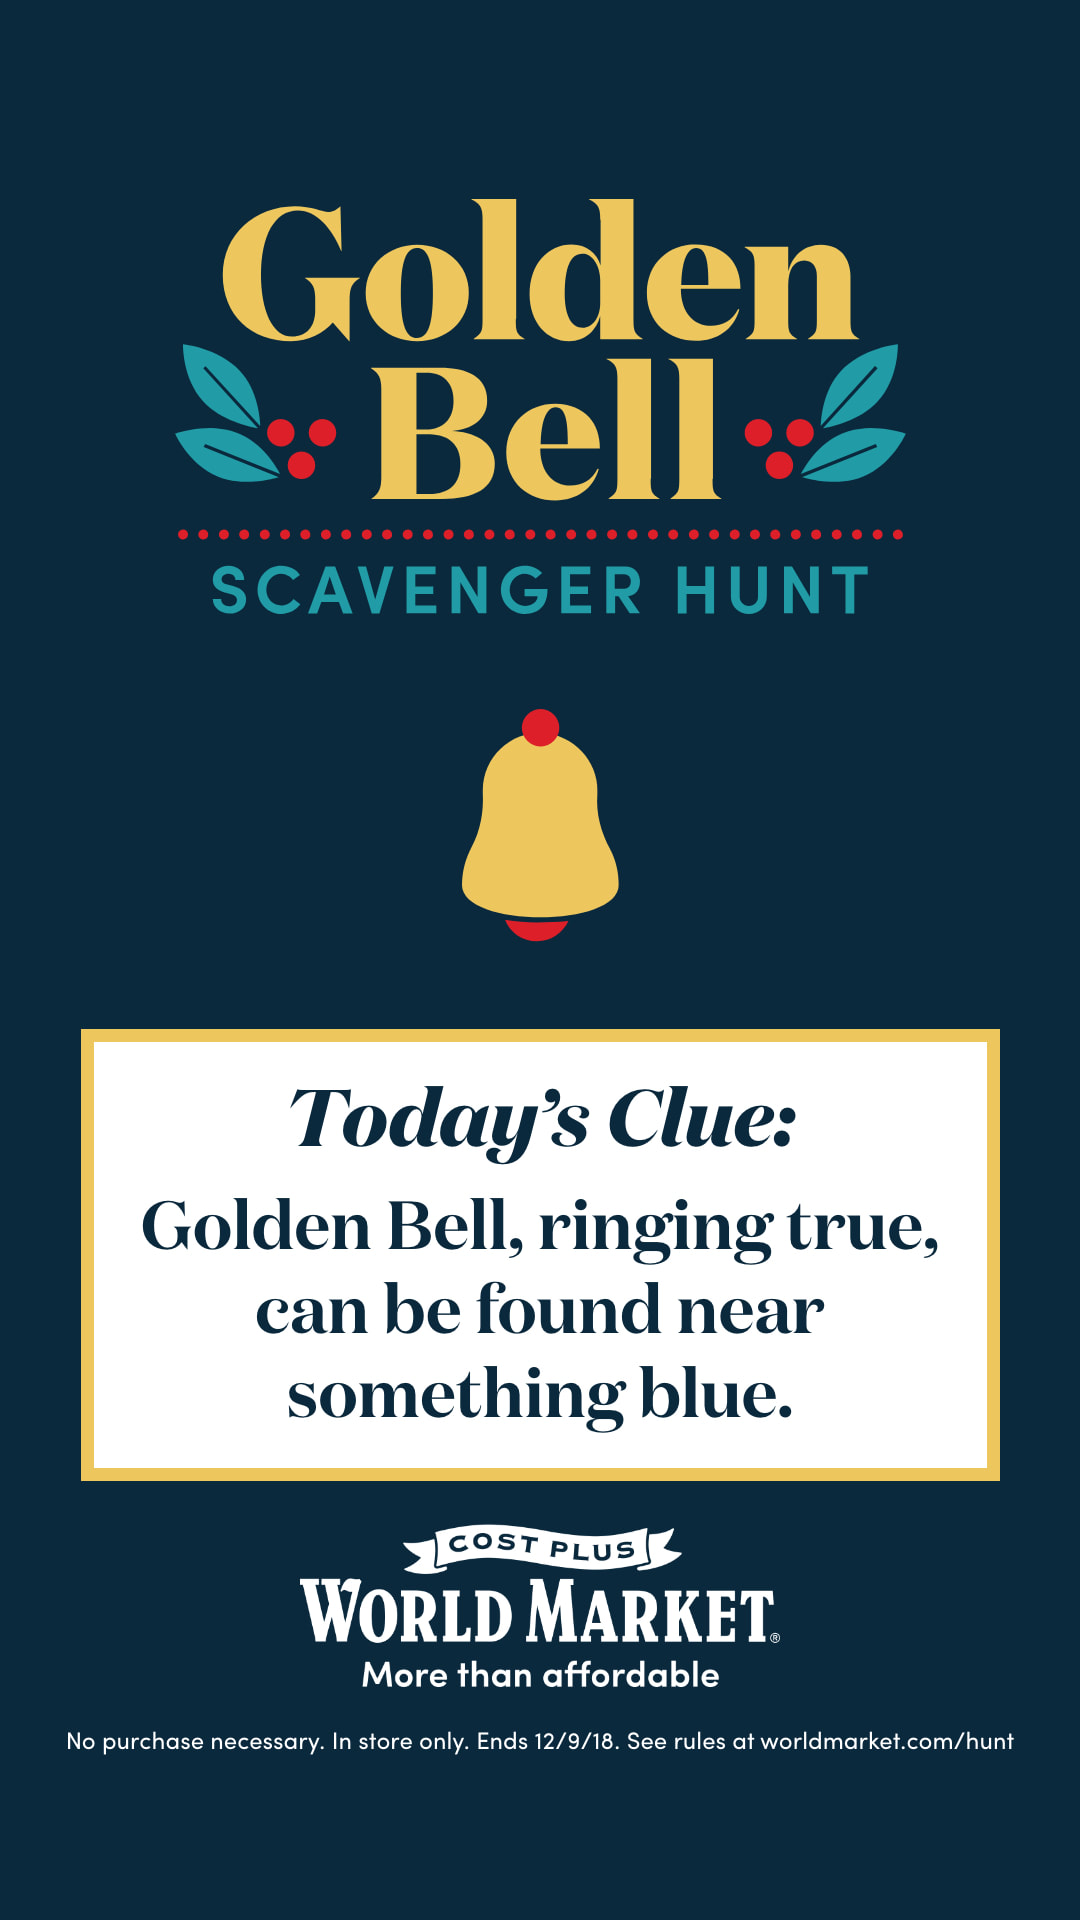 Cost Plus World Market's Golden Bell scavenger hunt 2018